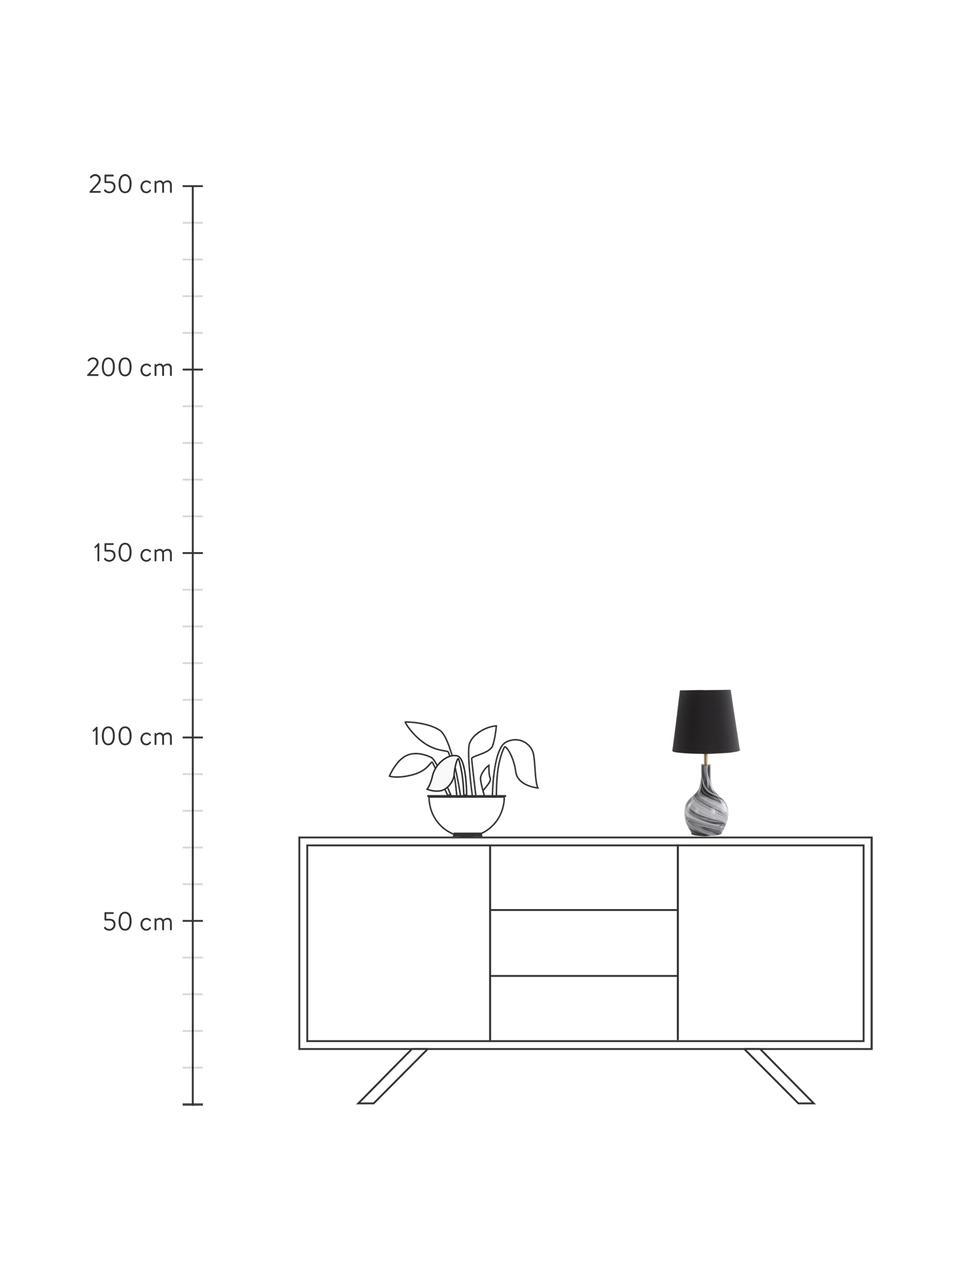 Lámpara de mesa de vidrio Budgee, Pantalla: tela, Cable: plástico, Negro, blanco, Ø 20 x Al 40 cm